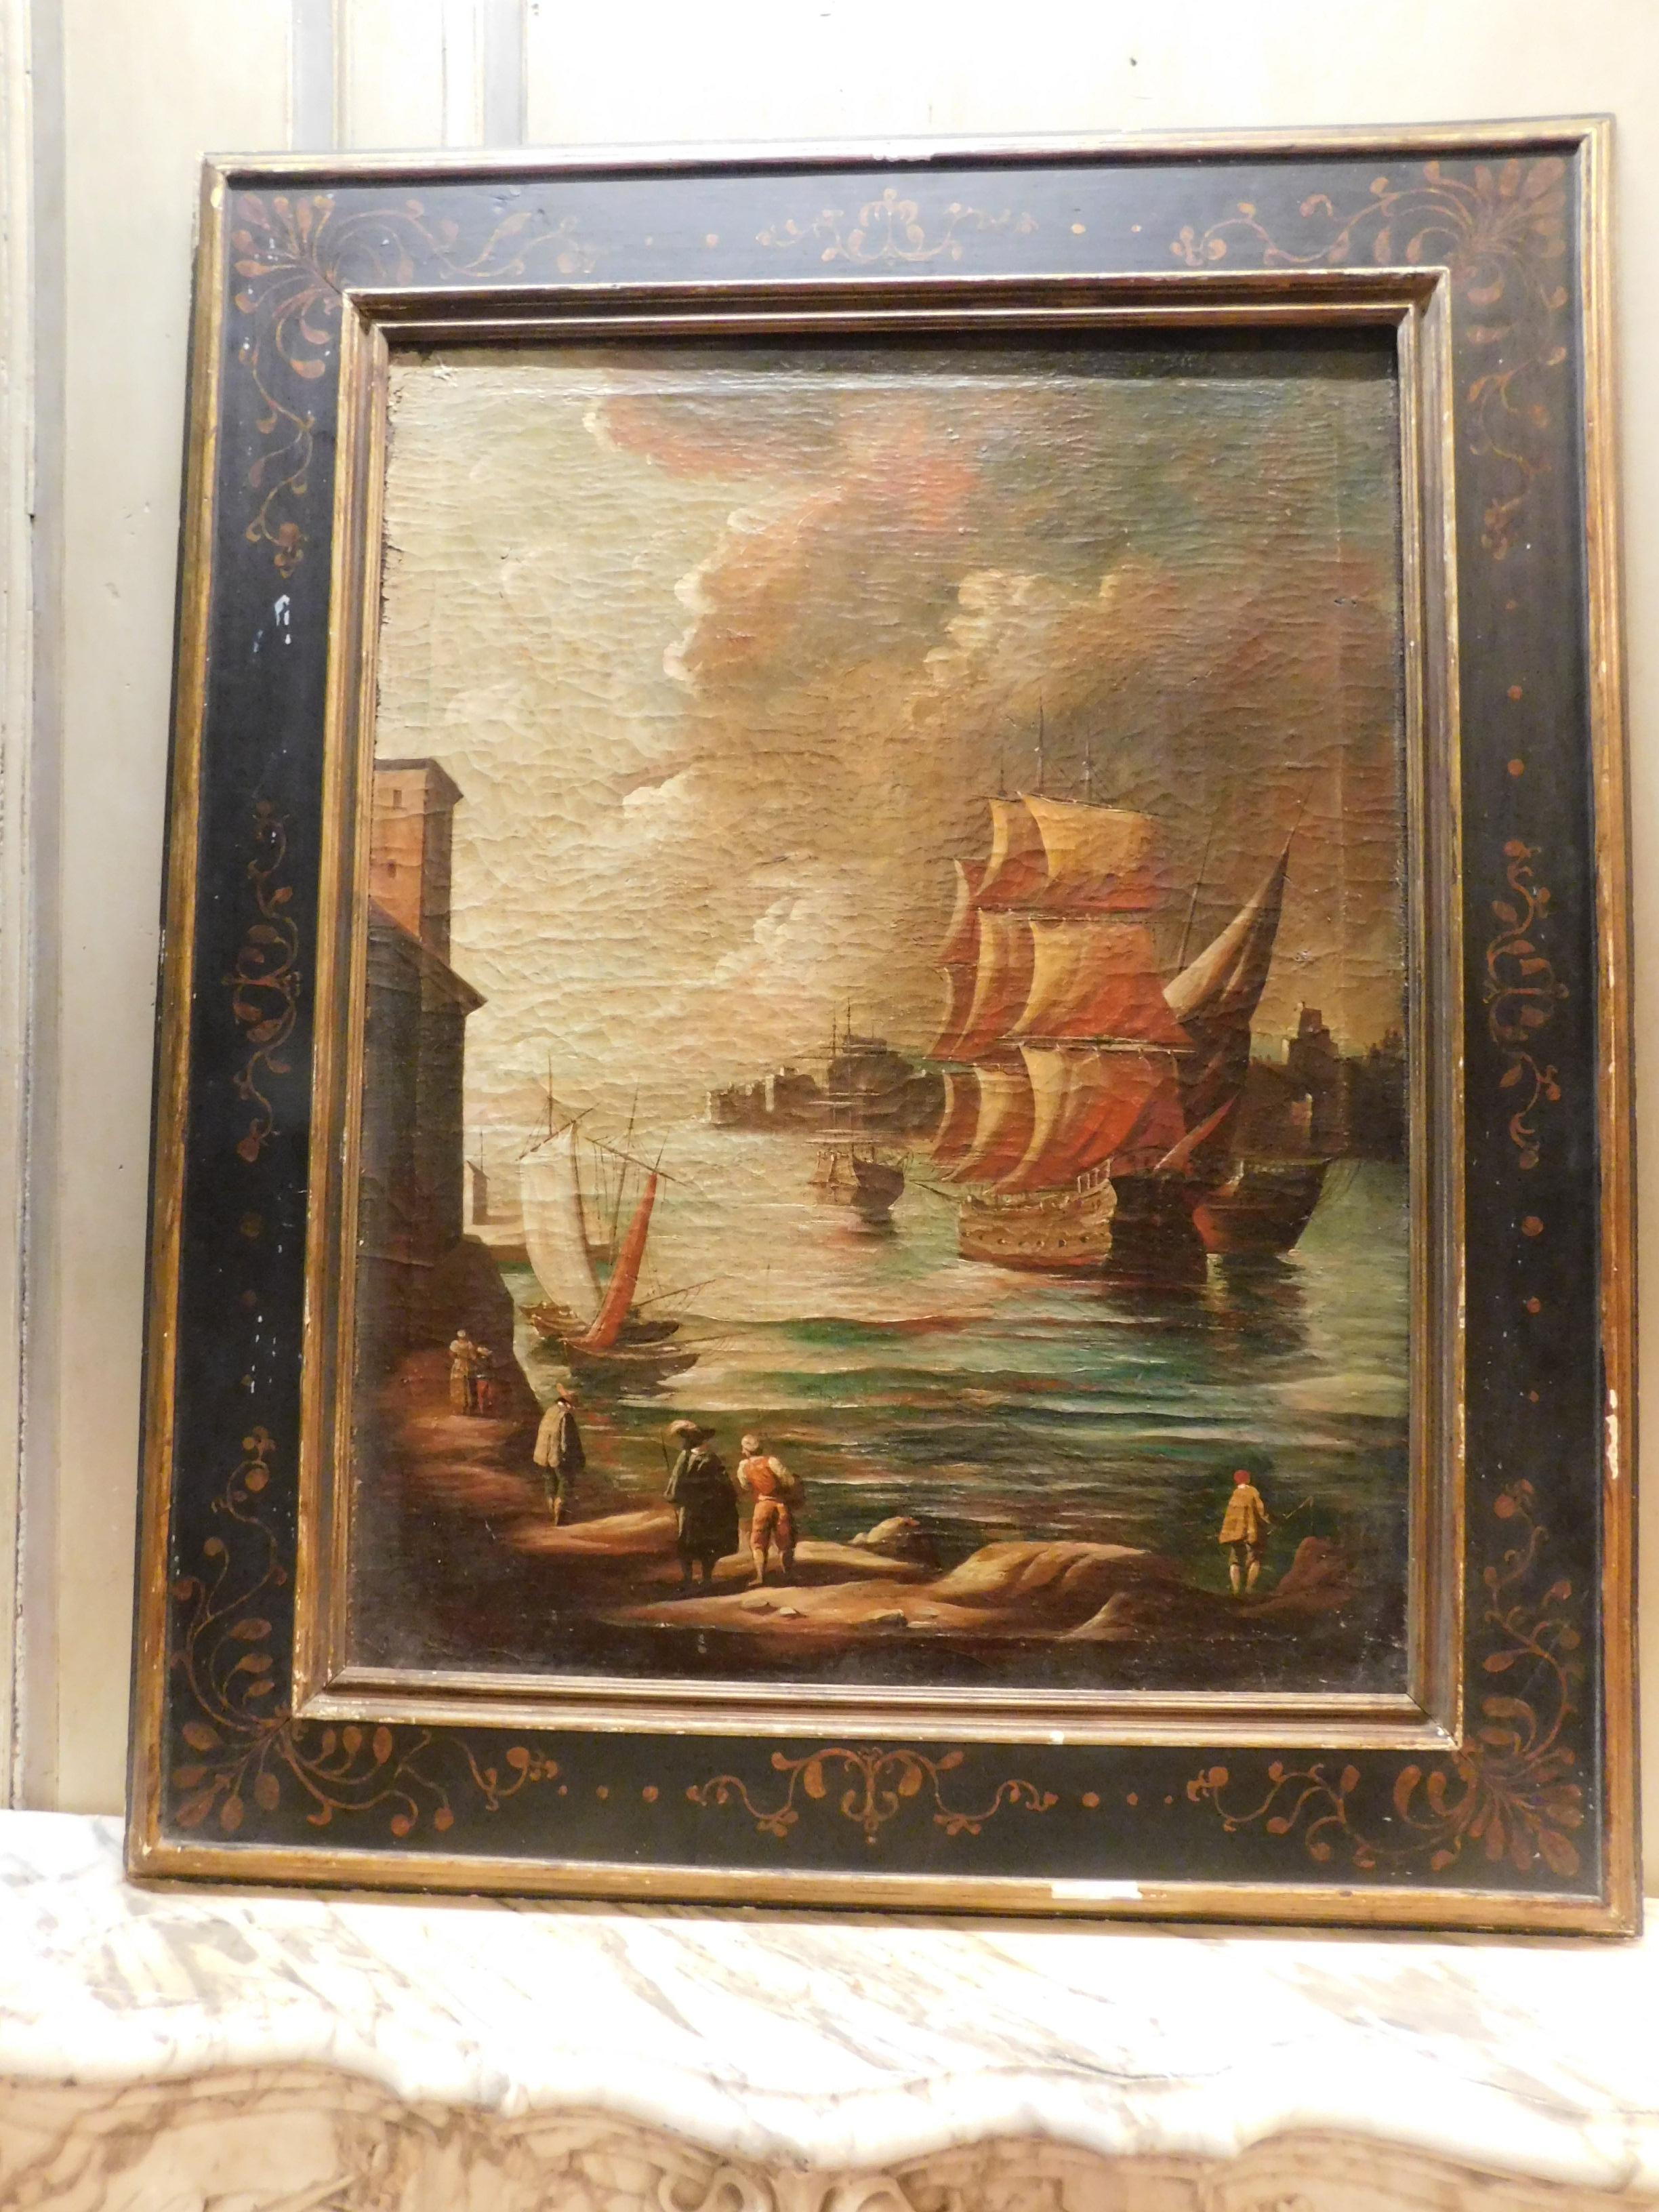 Ancienne paire de peintures, à l'huile sur toile, les deux ont des sujets avec des vues de paysages marins, complète avec un ancien et original cadre en bois peint à la main, coeval du 18ème siècle, fabriqué en Italie.
chaque pièce mesure cm w 94 x